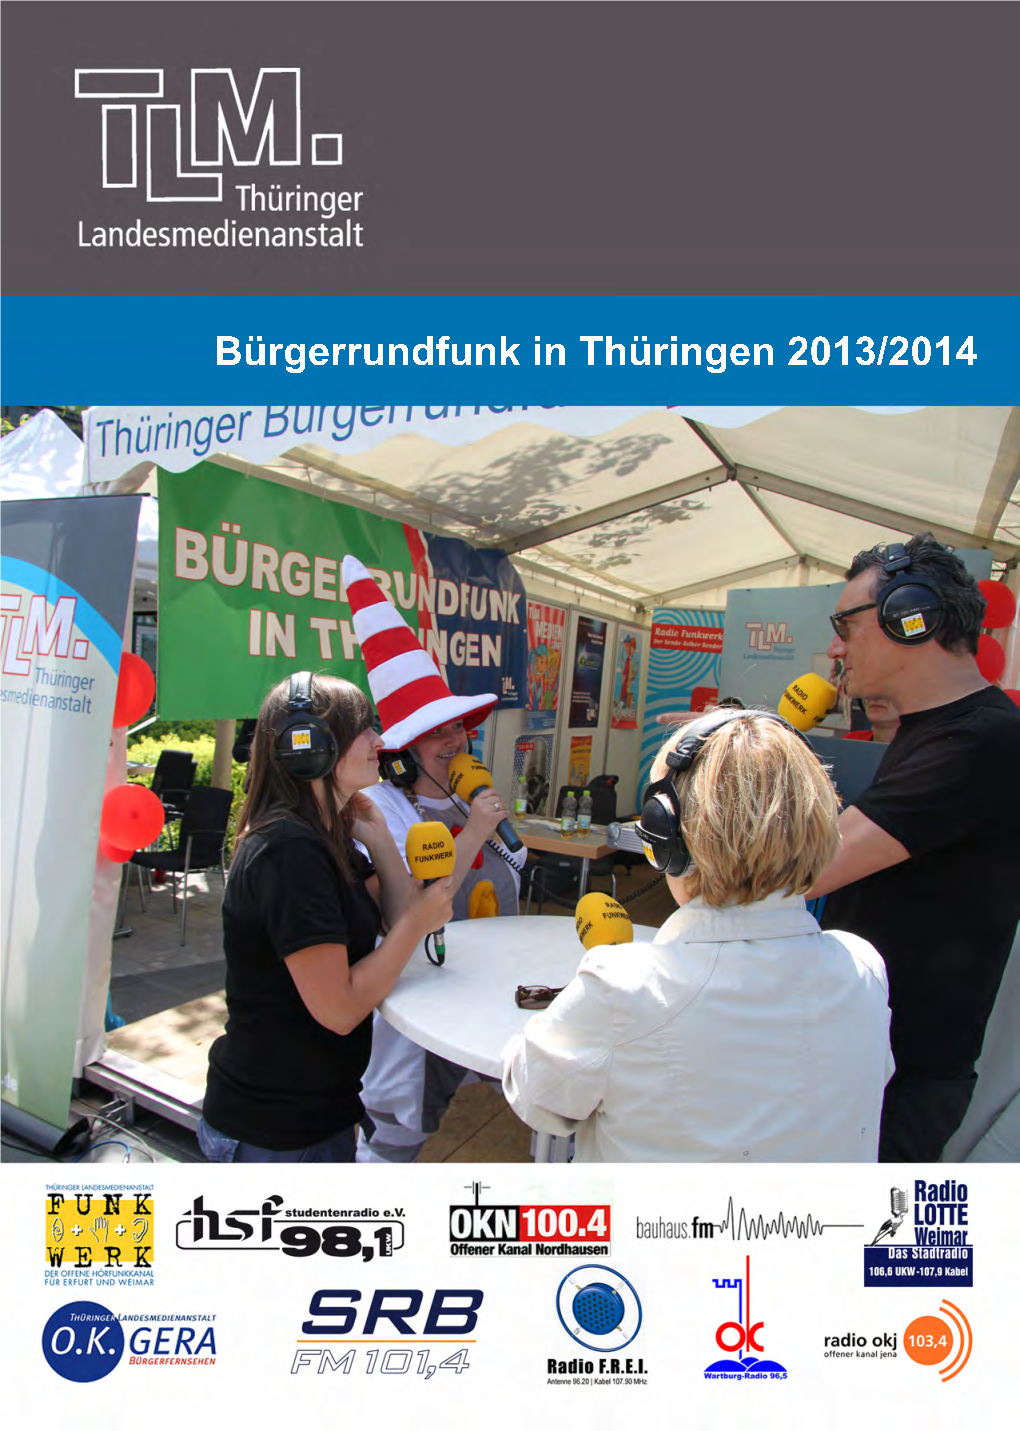 Bürgerrundfunk in Thüringen 2013/14“ Soll Dieses Engagement Erneut Sichtbar Und Gewürdigt Werden